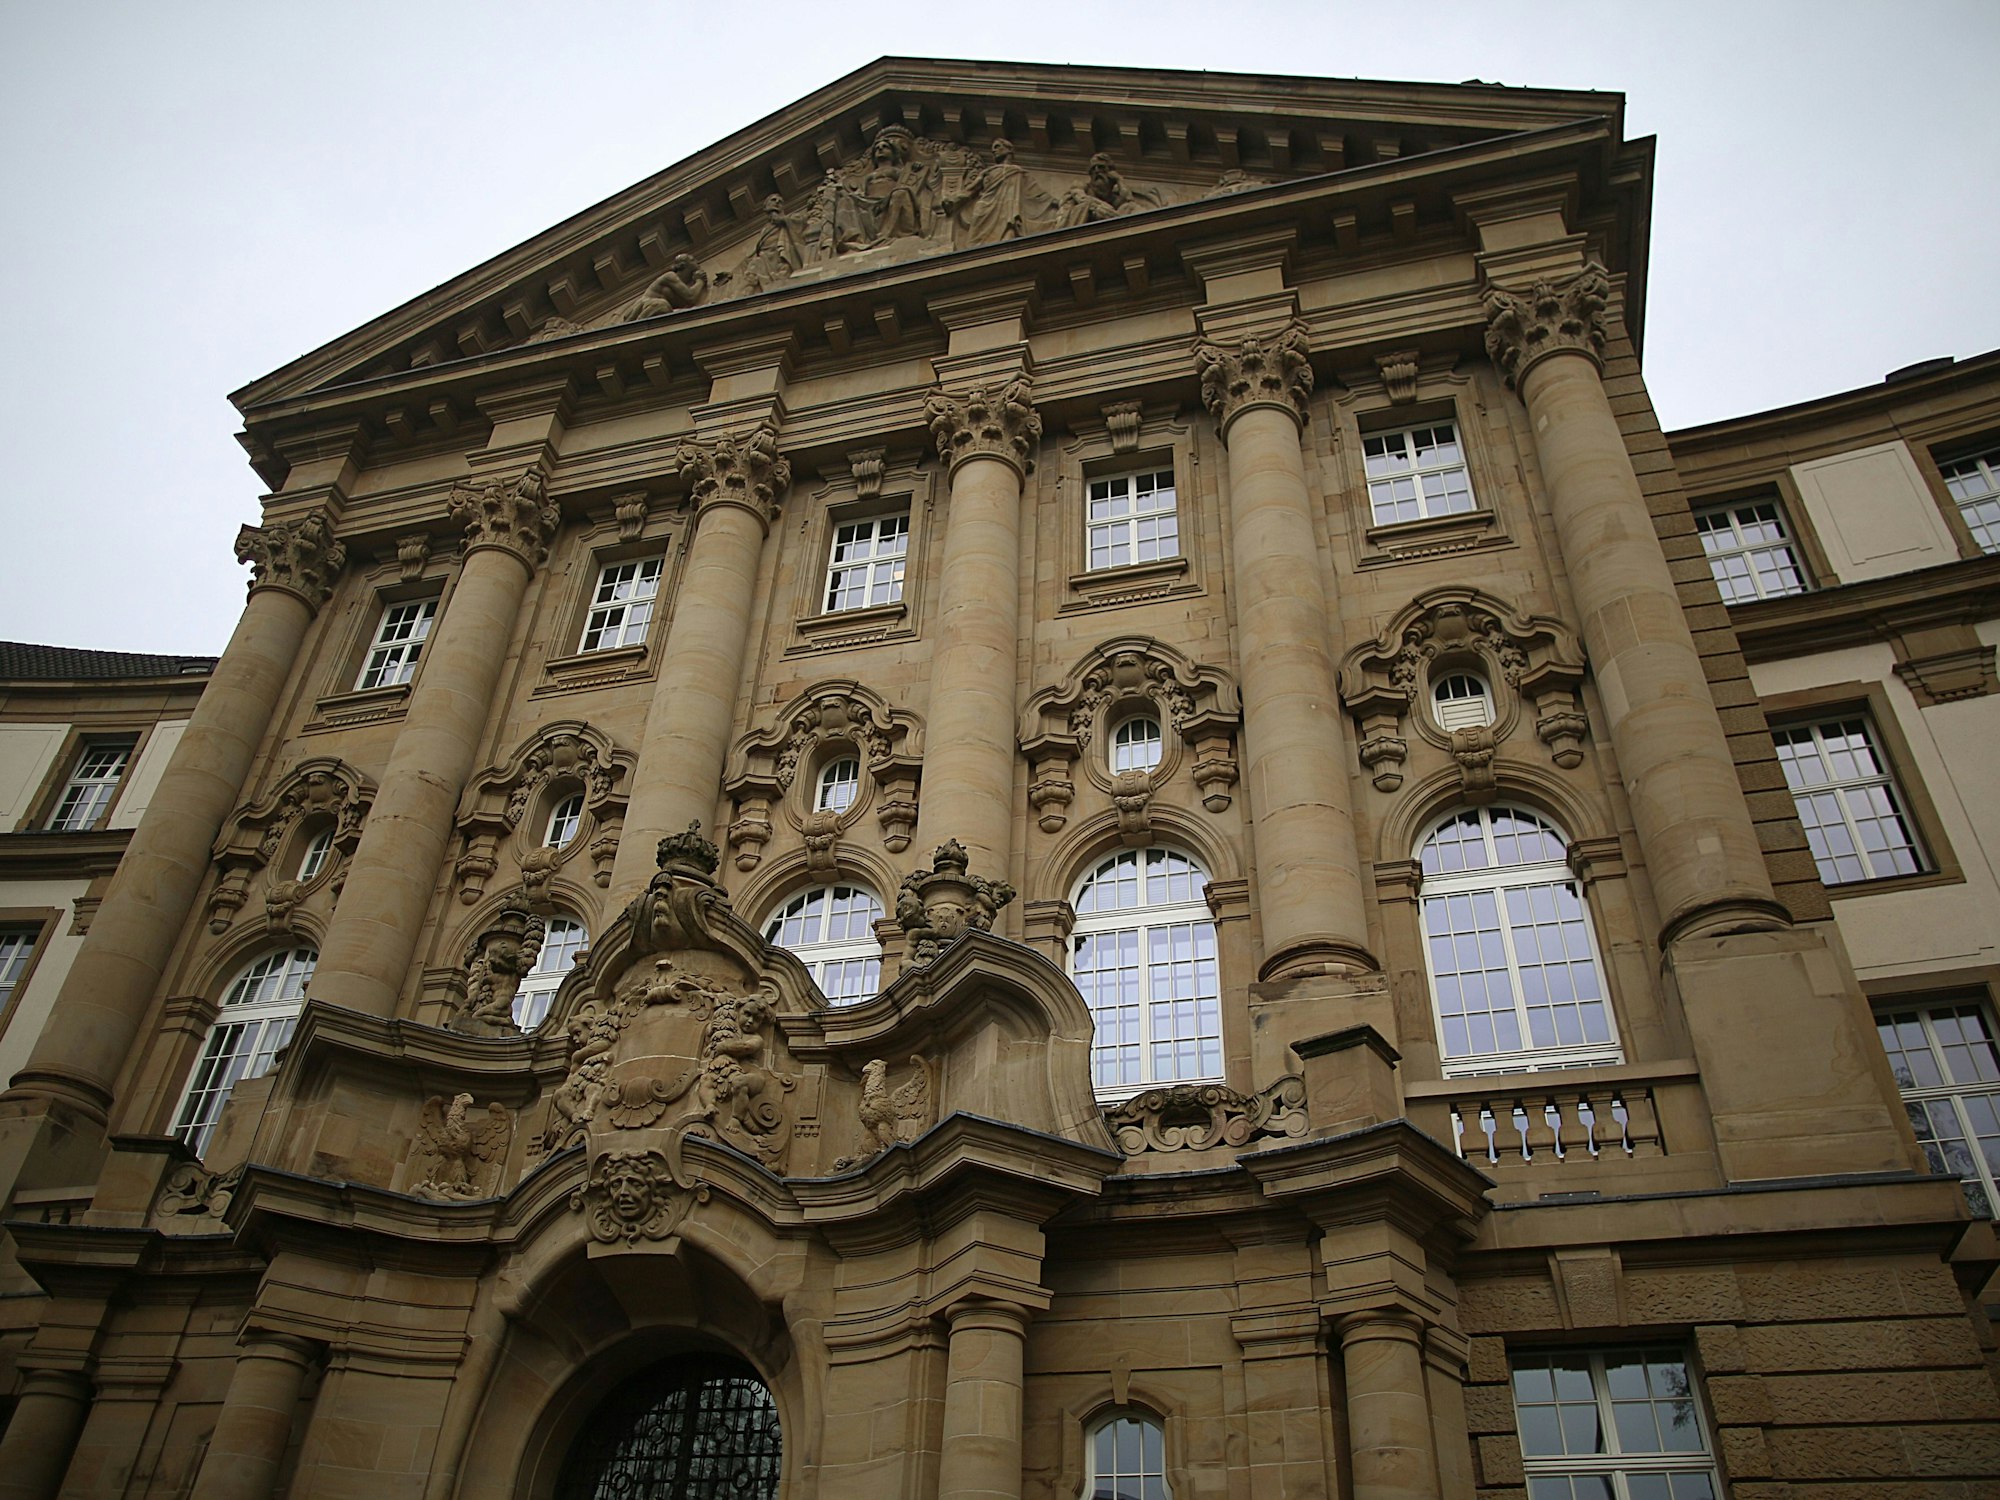 Die Fassade des Oberlandesgerichts ist prächtig mit vielen Verzierungen.